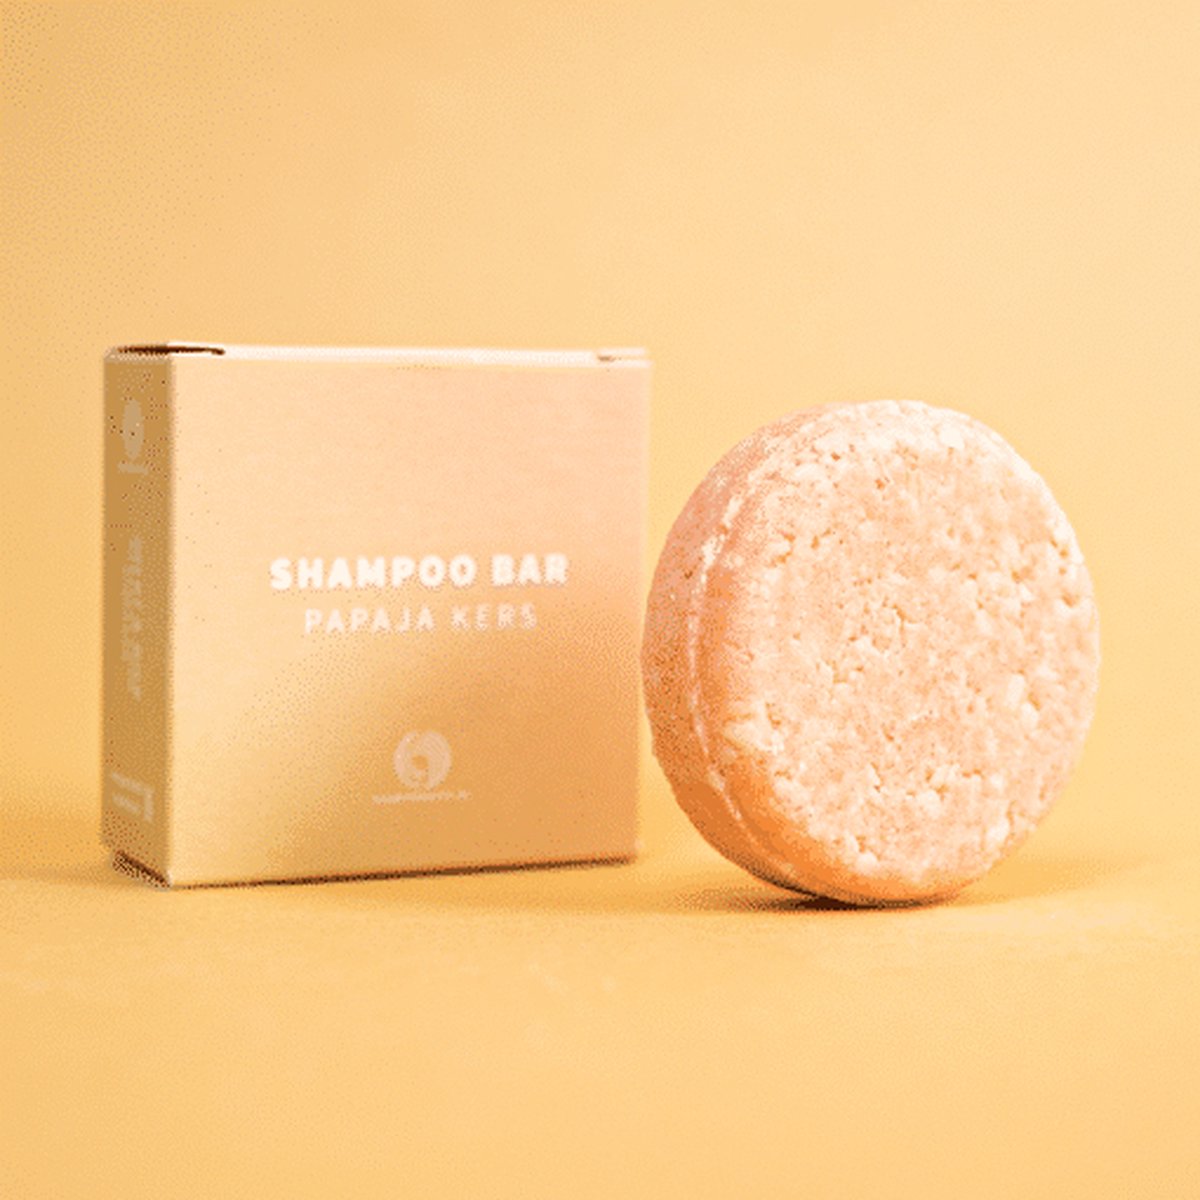 Shampoo Bar Papaja Kers 60 gram - voor alle haartypen en kinderen - plasticvrij - vegan